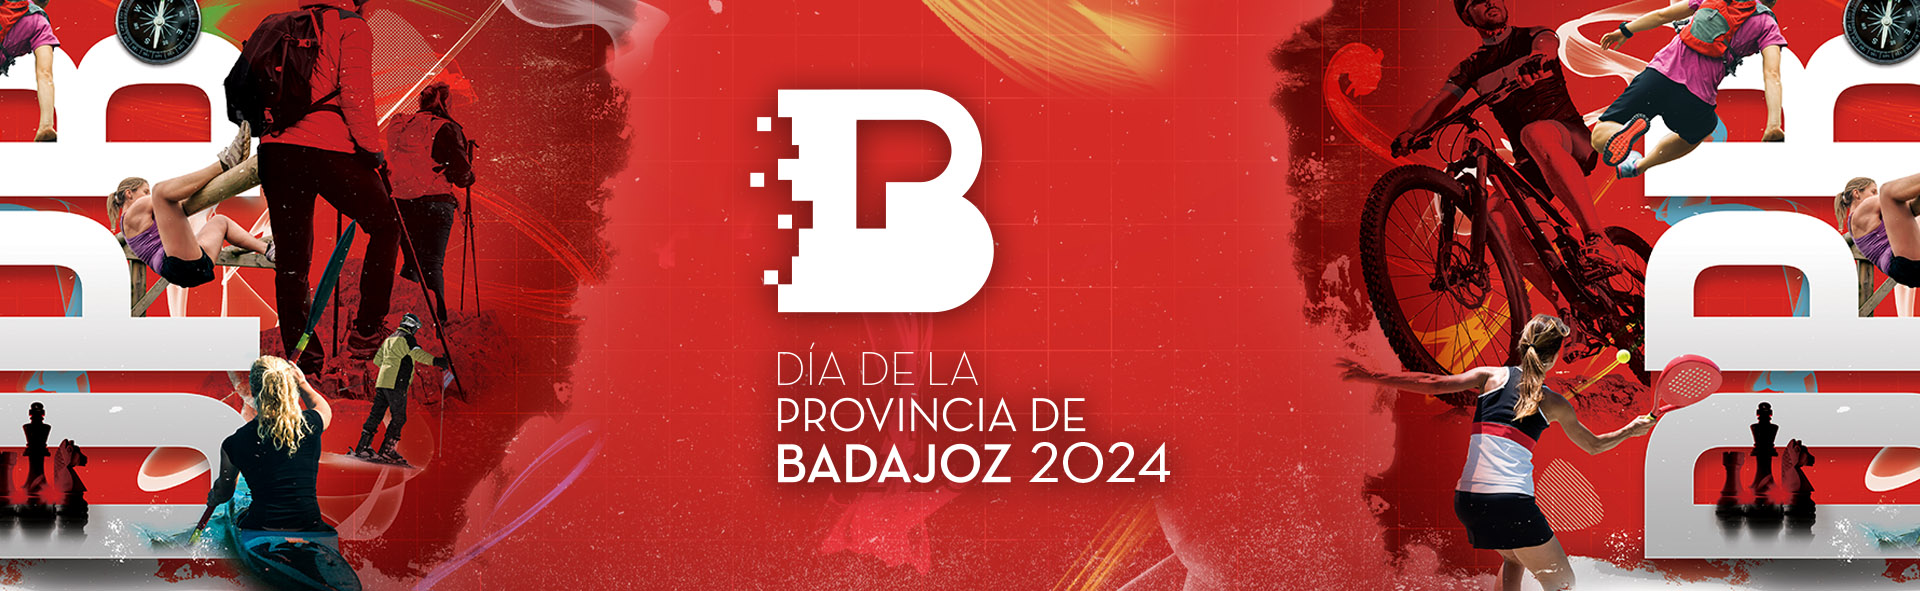 Día de la Provincia de Badajoz 2024